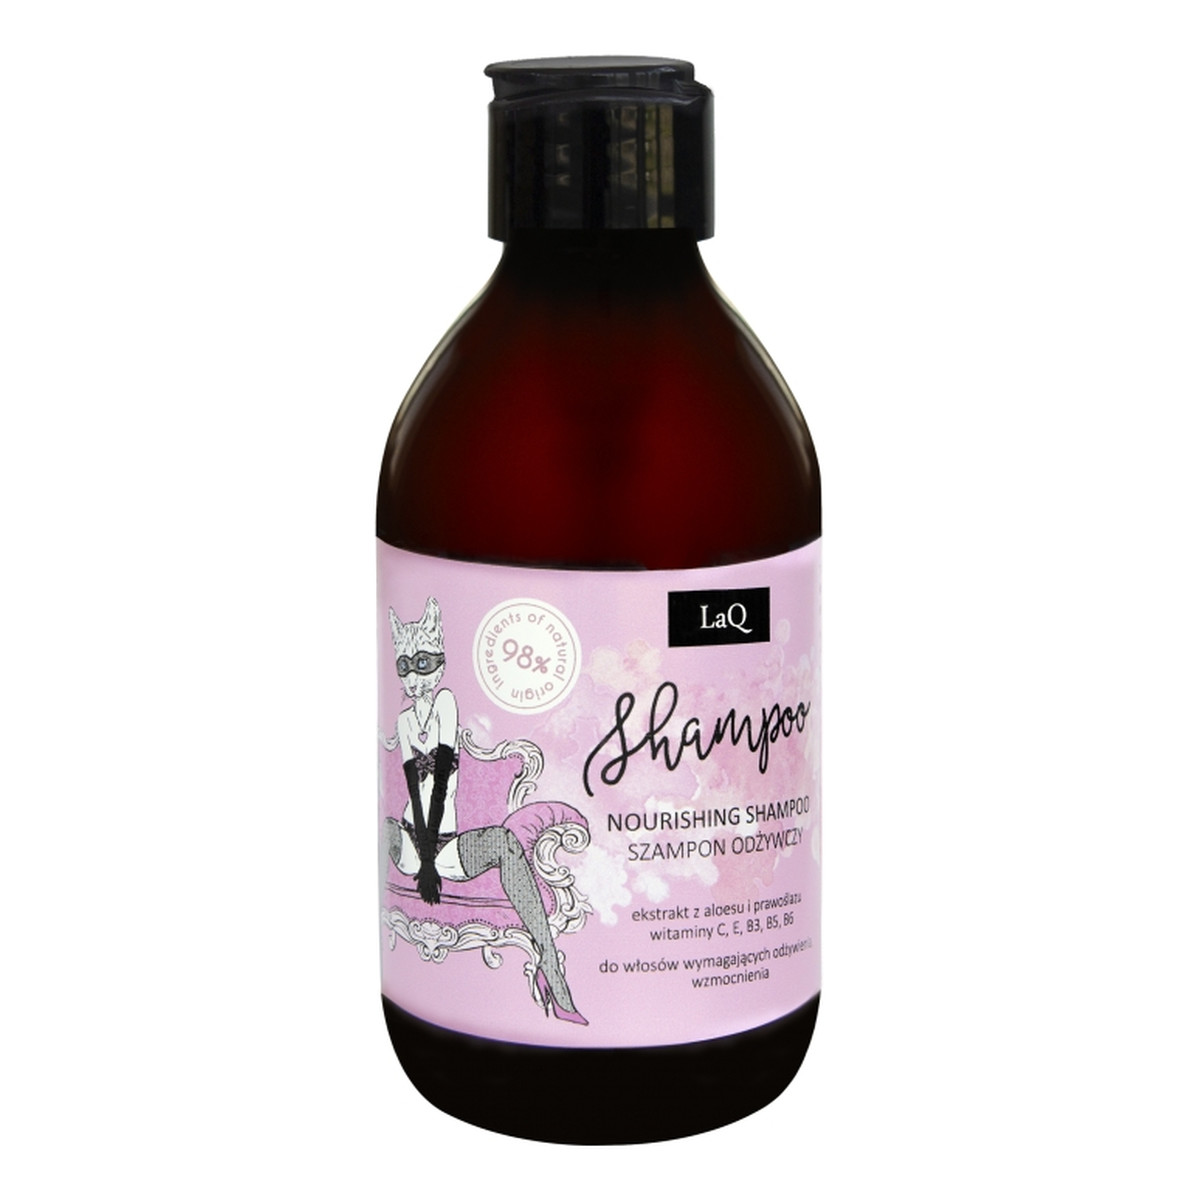 Laq Nourishing shampoo odżywczy szampon do włosów kocica piwonia 300ml